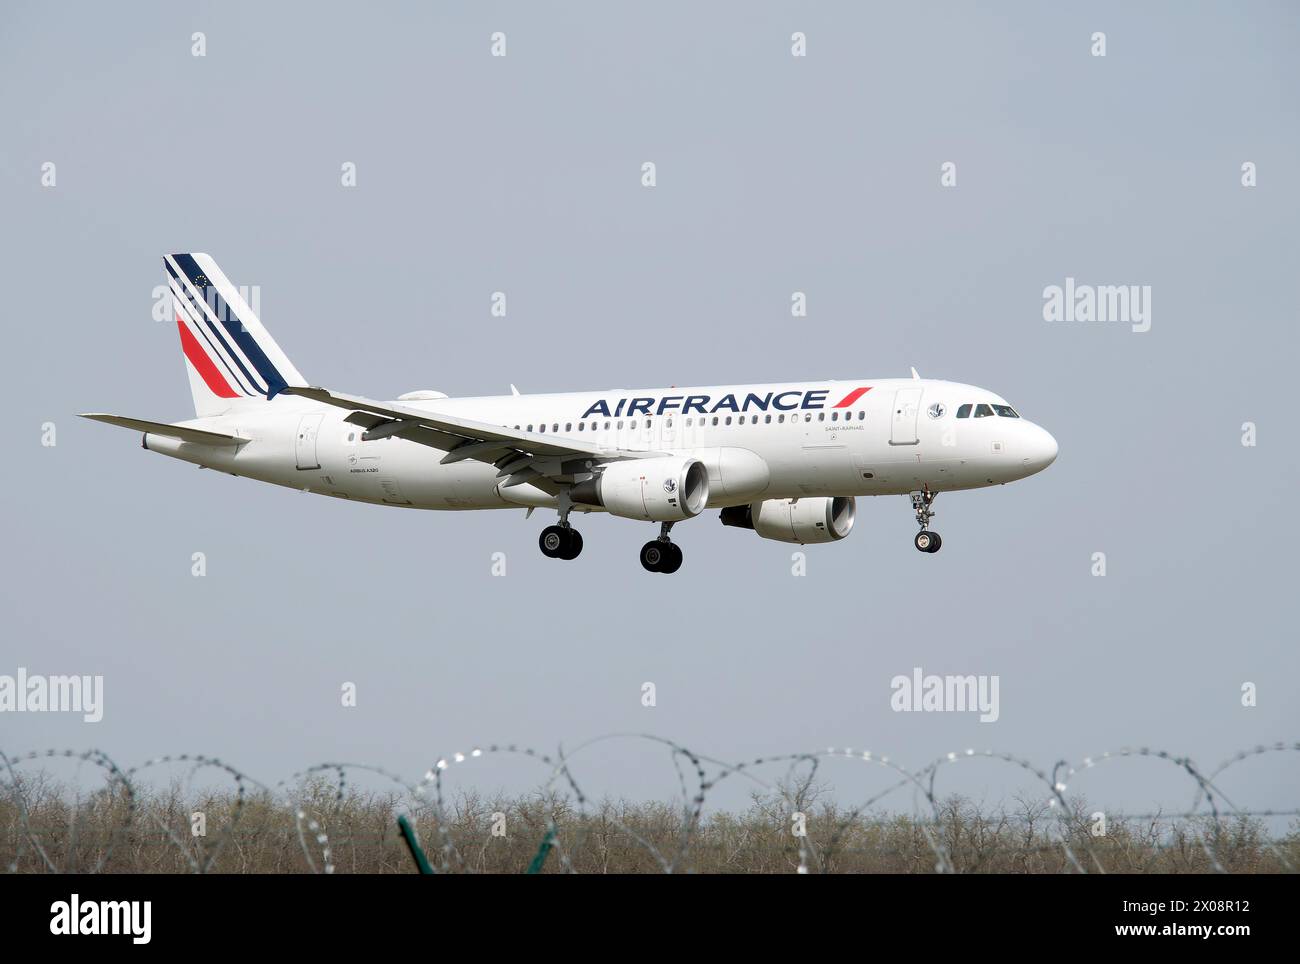 Air France (una delle più grandi compagnie aeree del mondo), Airbus A320, Cargo Hill, Budapest, Ungheria, Magyarország, Europa Foto Stock